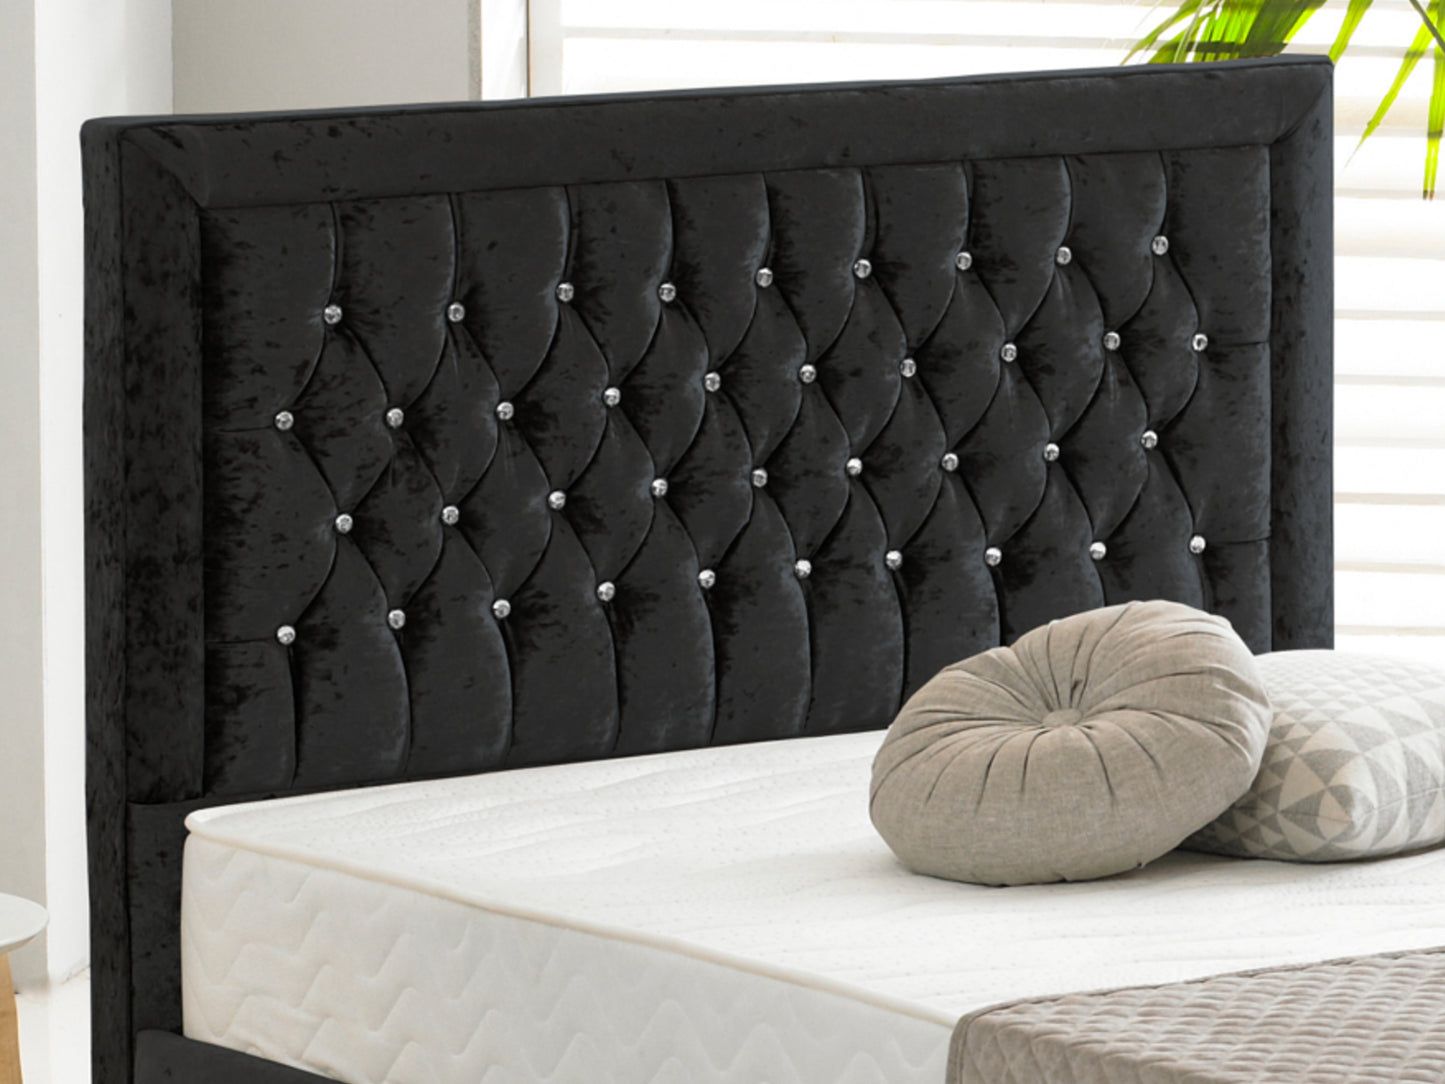 Sandringham Luxury Bed Frame in Crushed Velvet Black